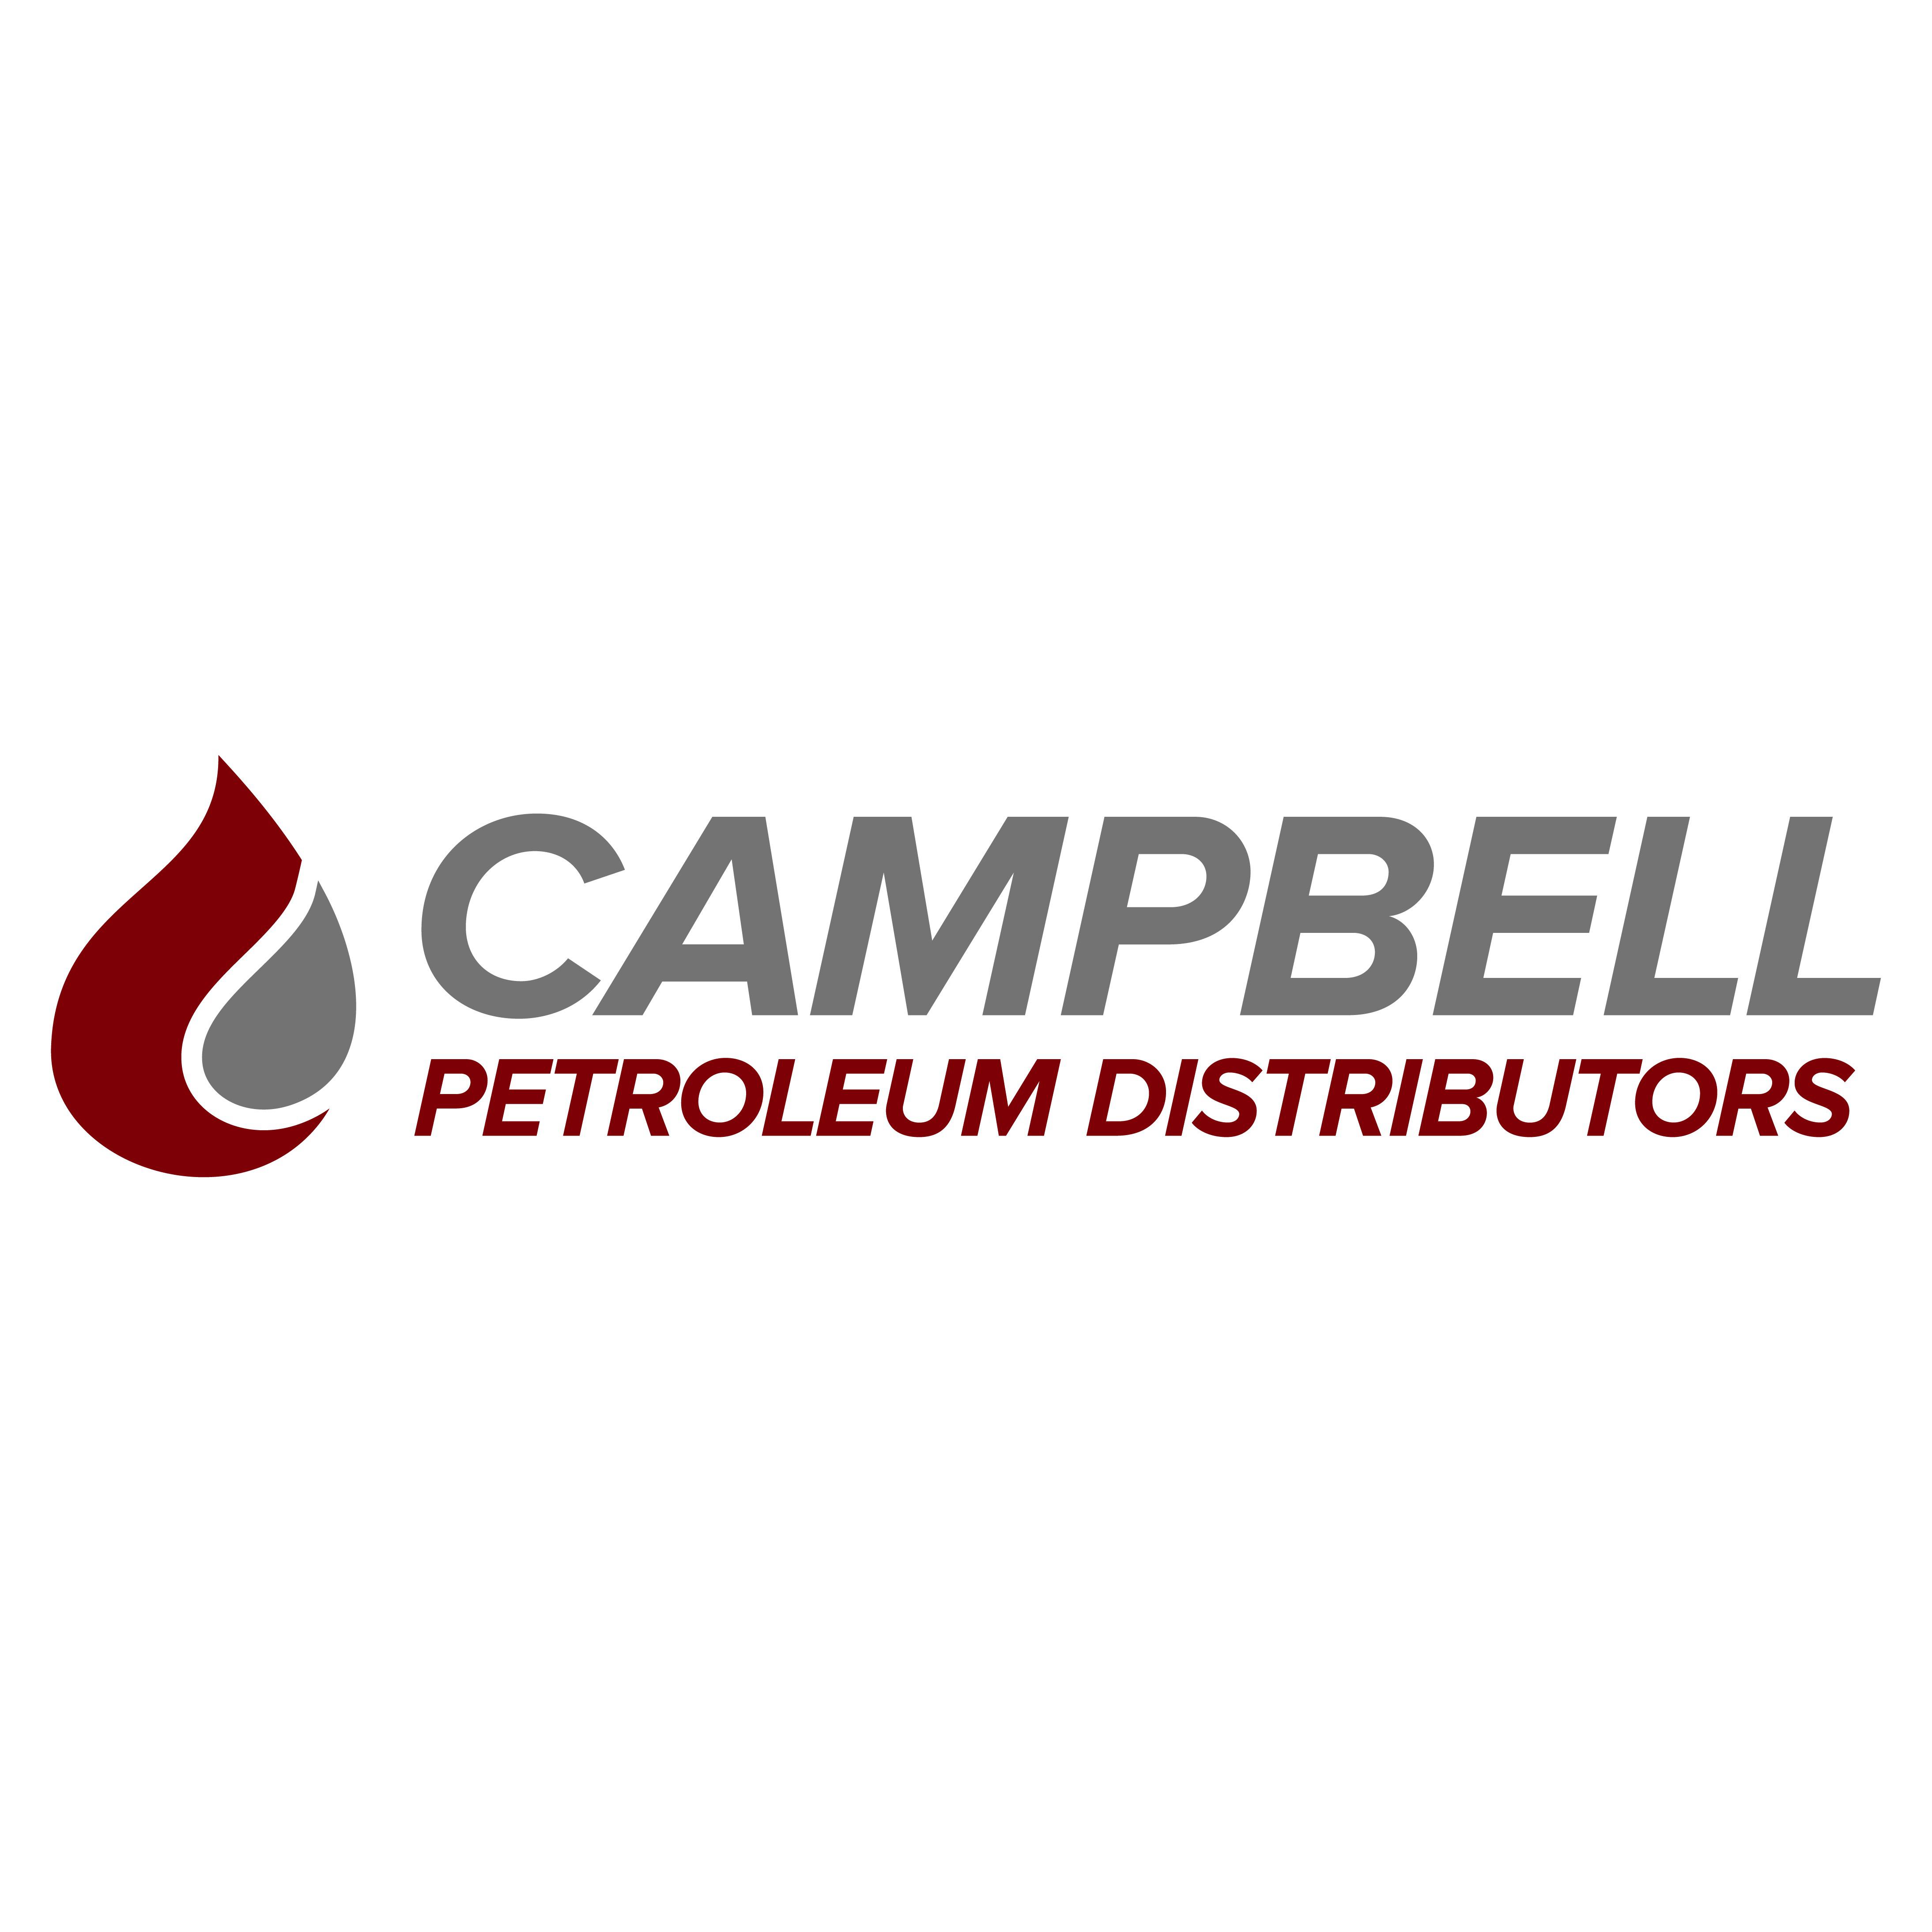 Campbell Petroleum Distributors Unanderra (02) 4276 5600